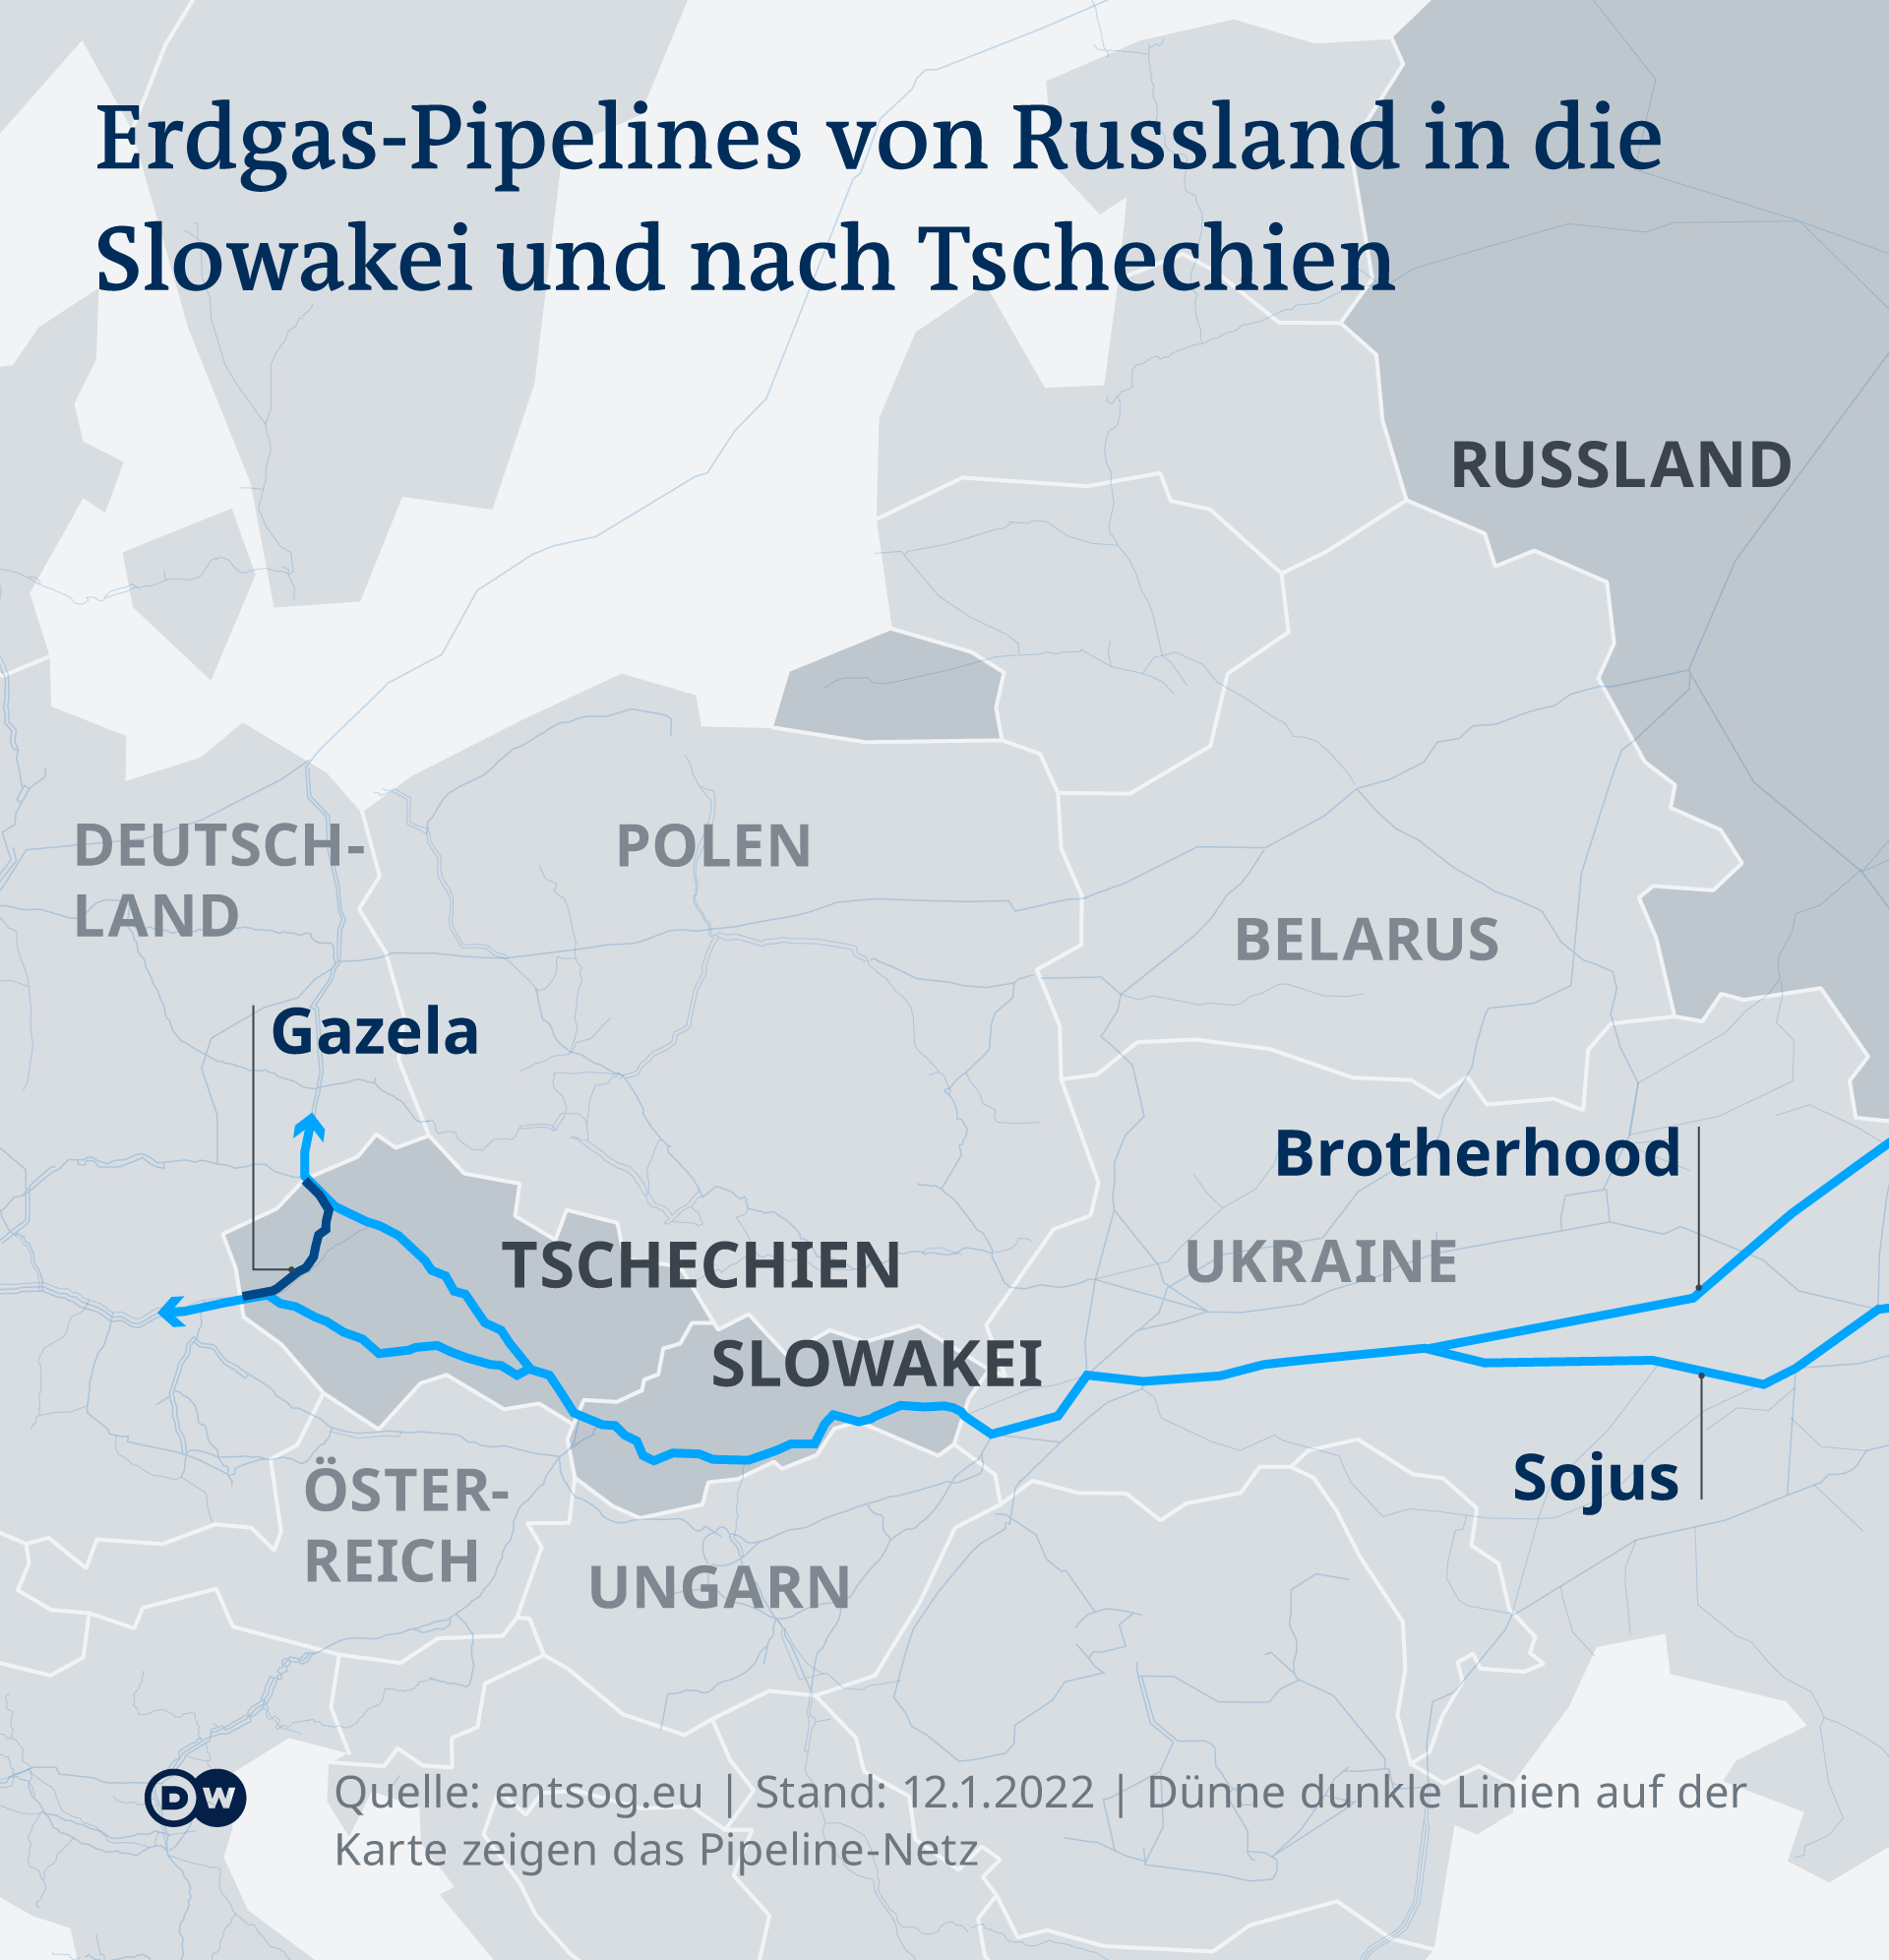 Tschechien will weg vom russischen Gas – DW – 30.05.2022